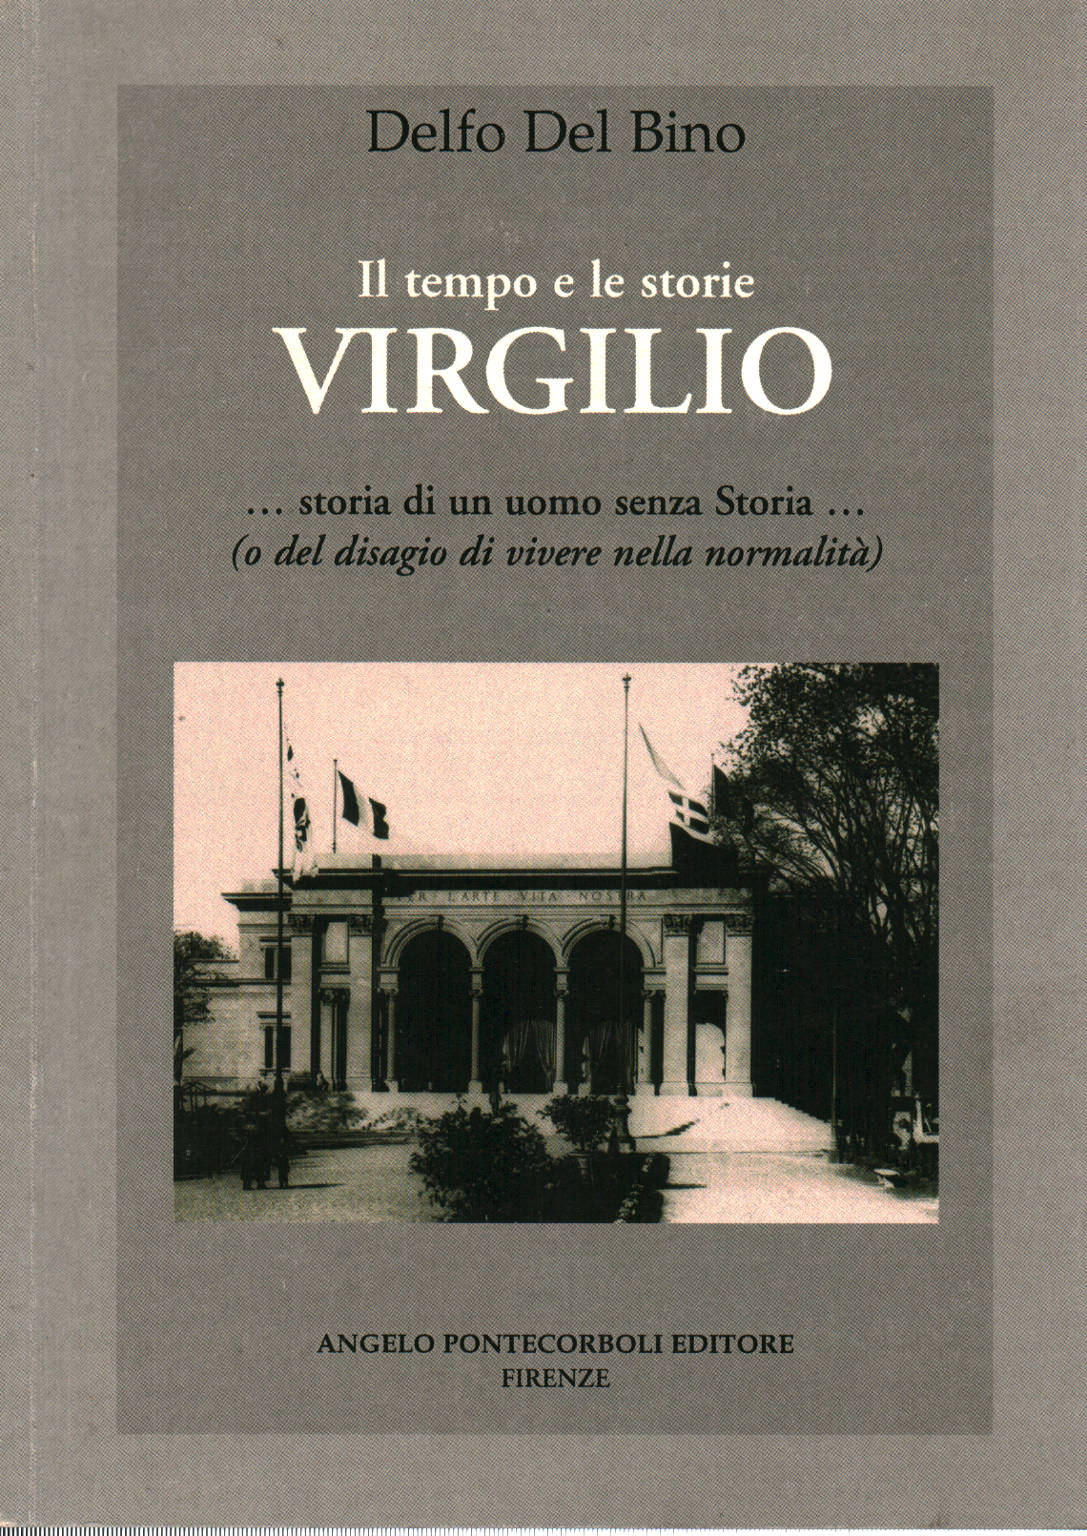 Il tempo e le storie Virgilio, Delfo Del Bino